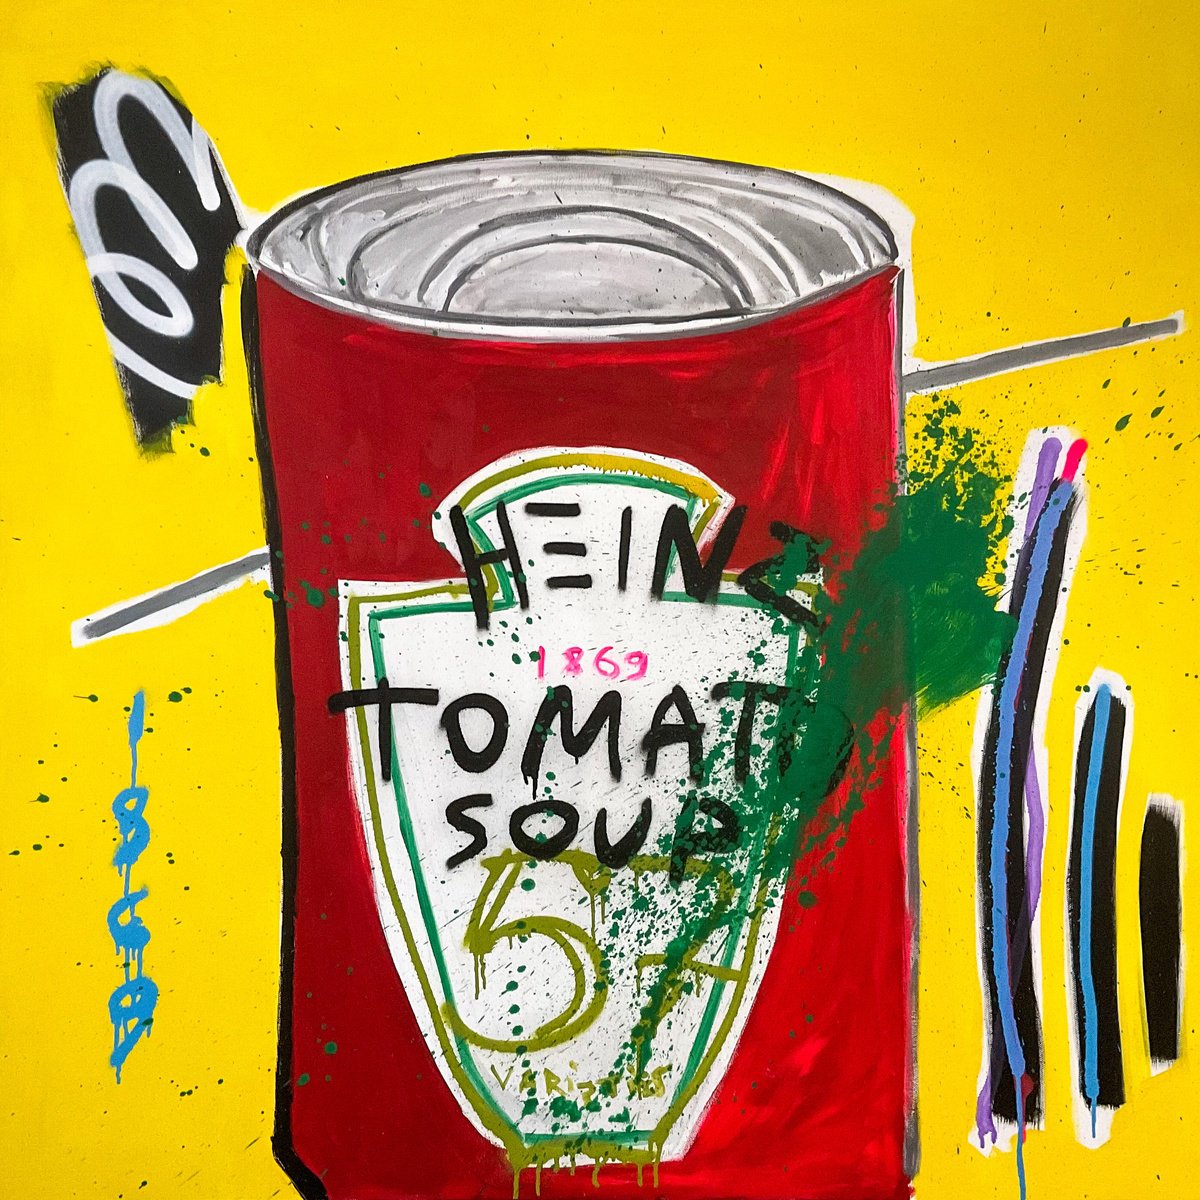 Tomato Soup by V. Lishko